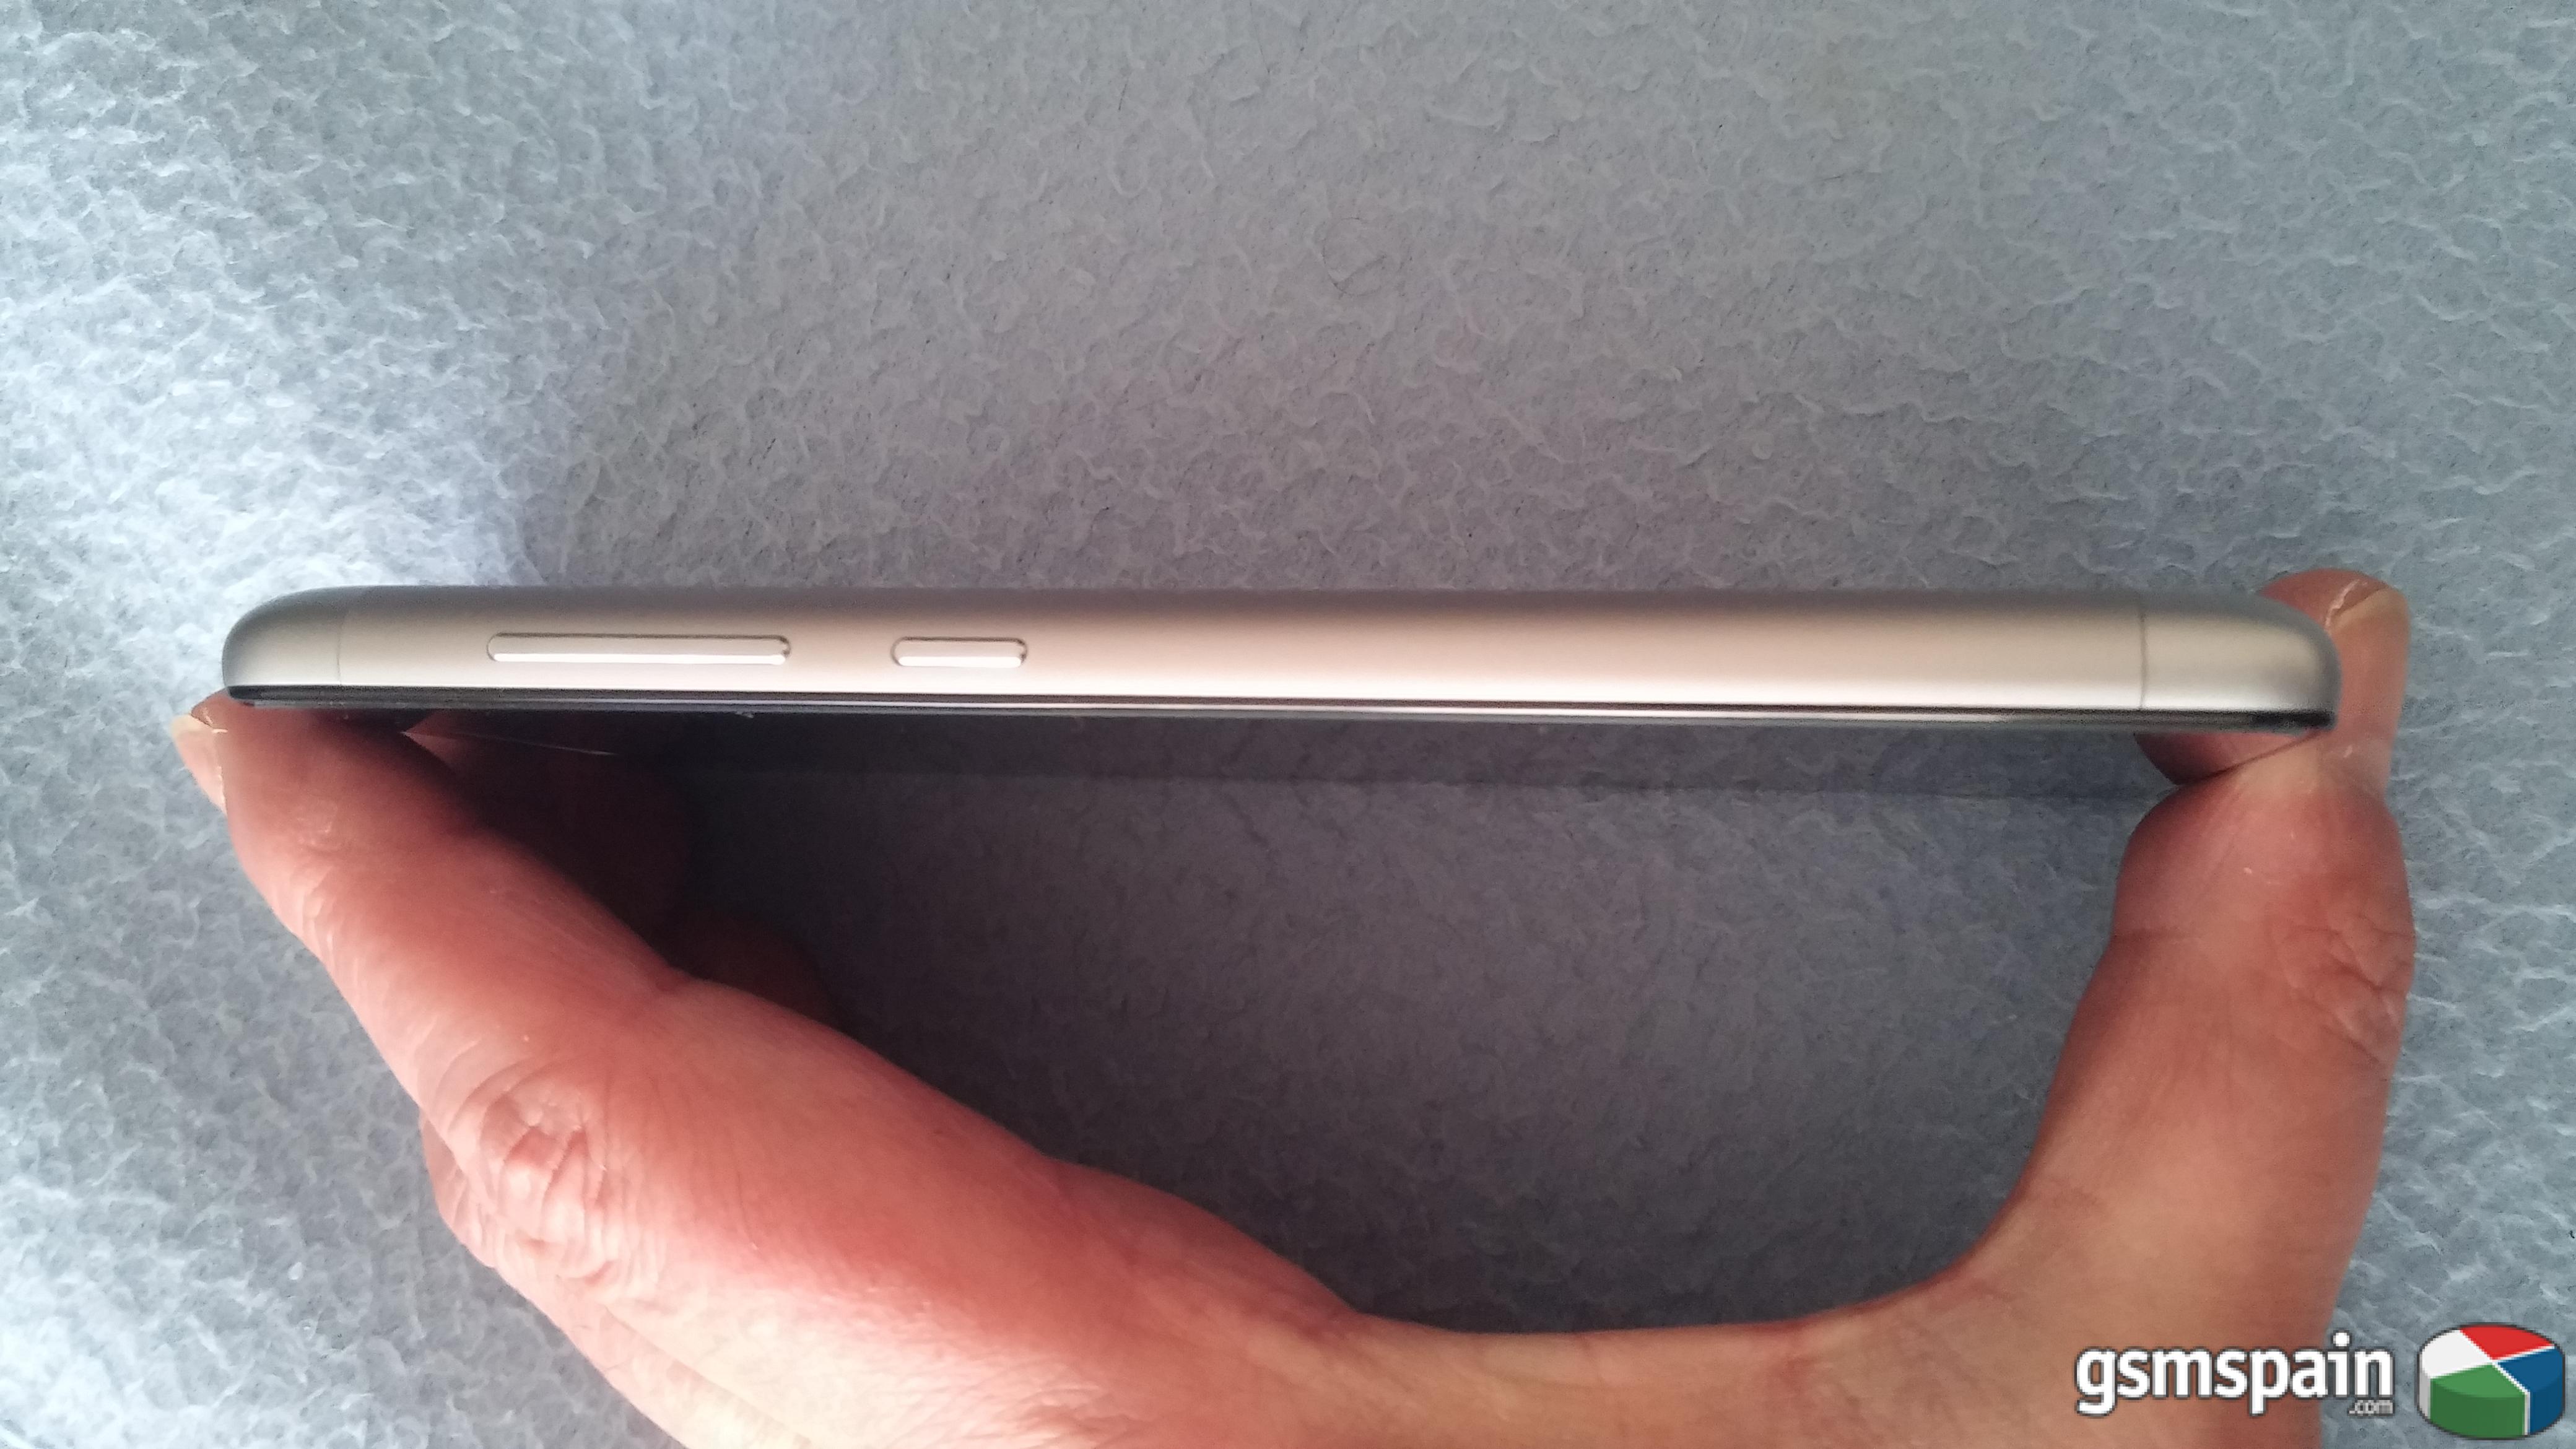 [VENDO] Xiaomi Redmi 3 negro, factura espaola //////135/////